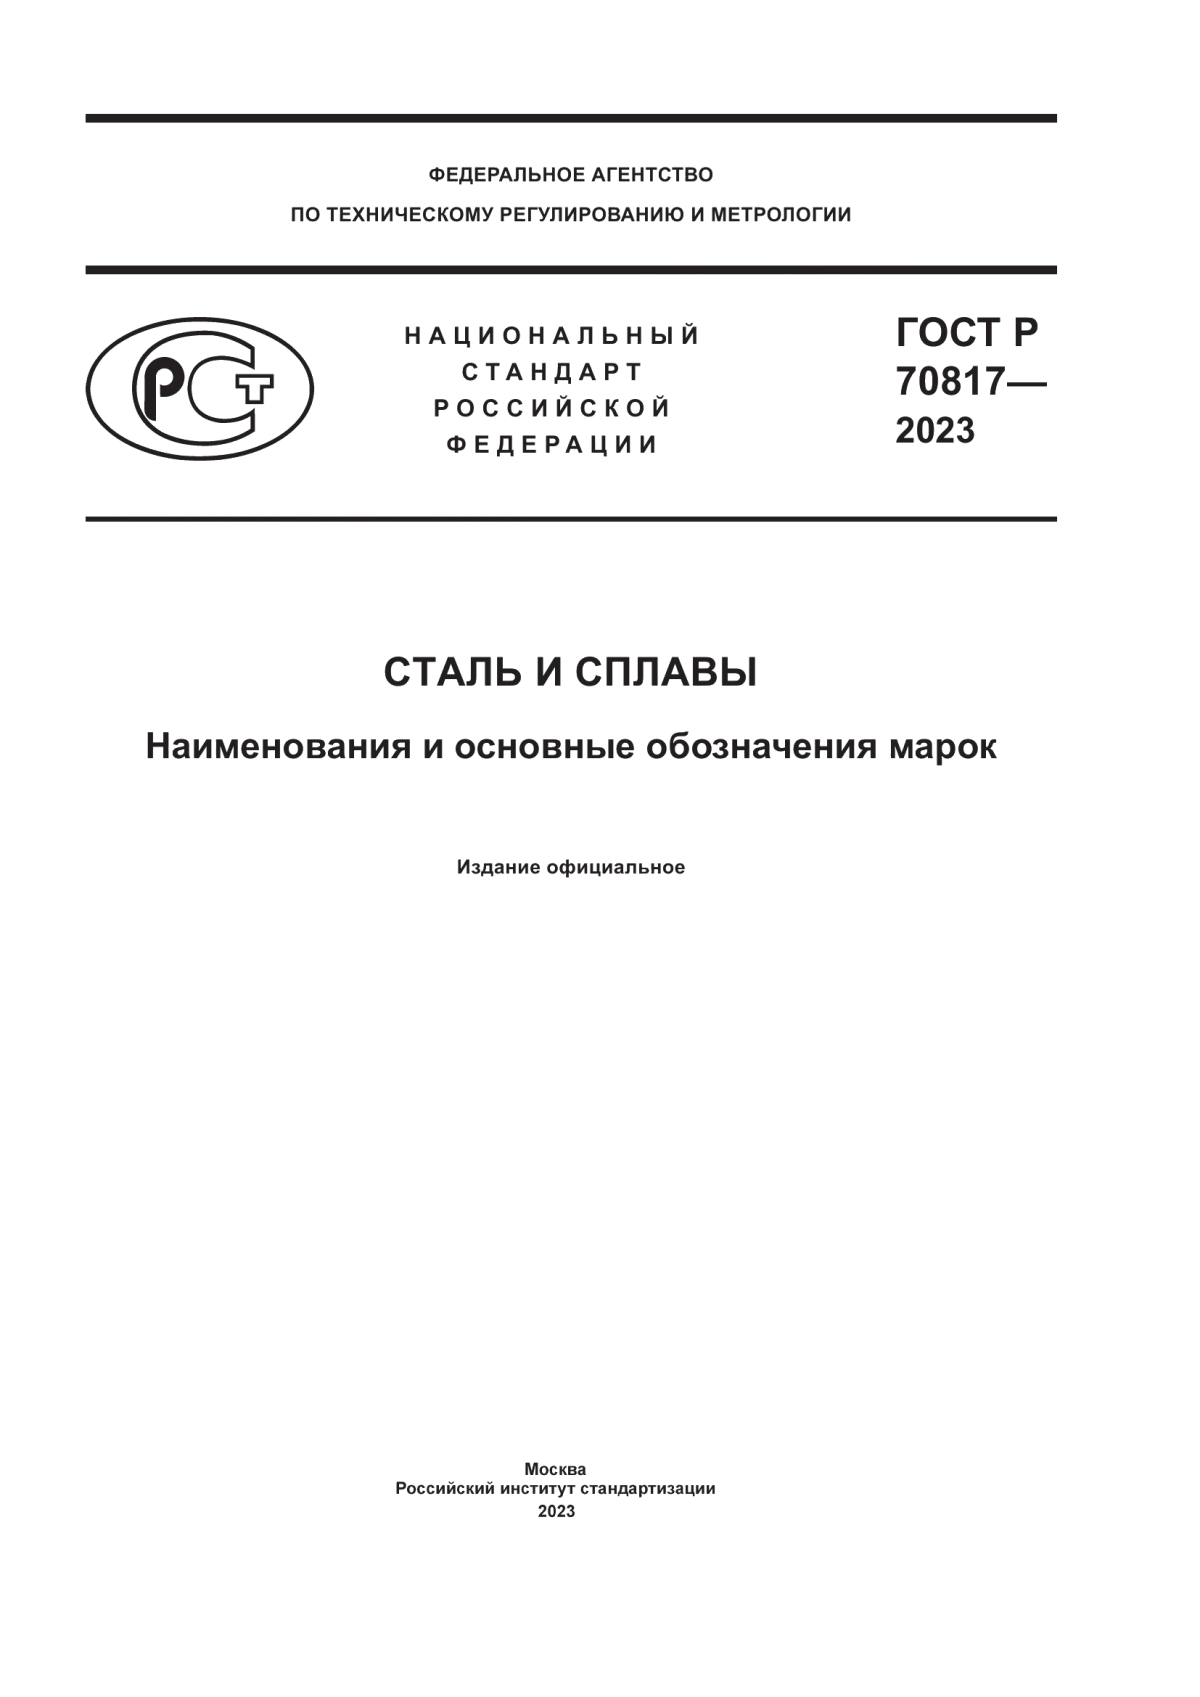 ГОСТ Р 70817-2023 Сталь и сплавы. Наименования и основные обозначения марок